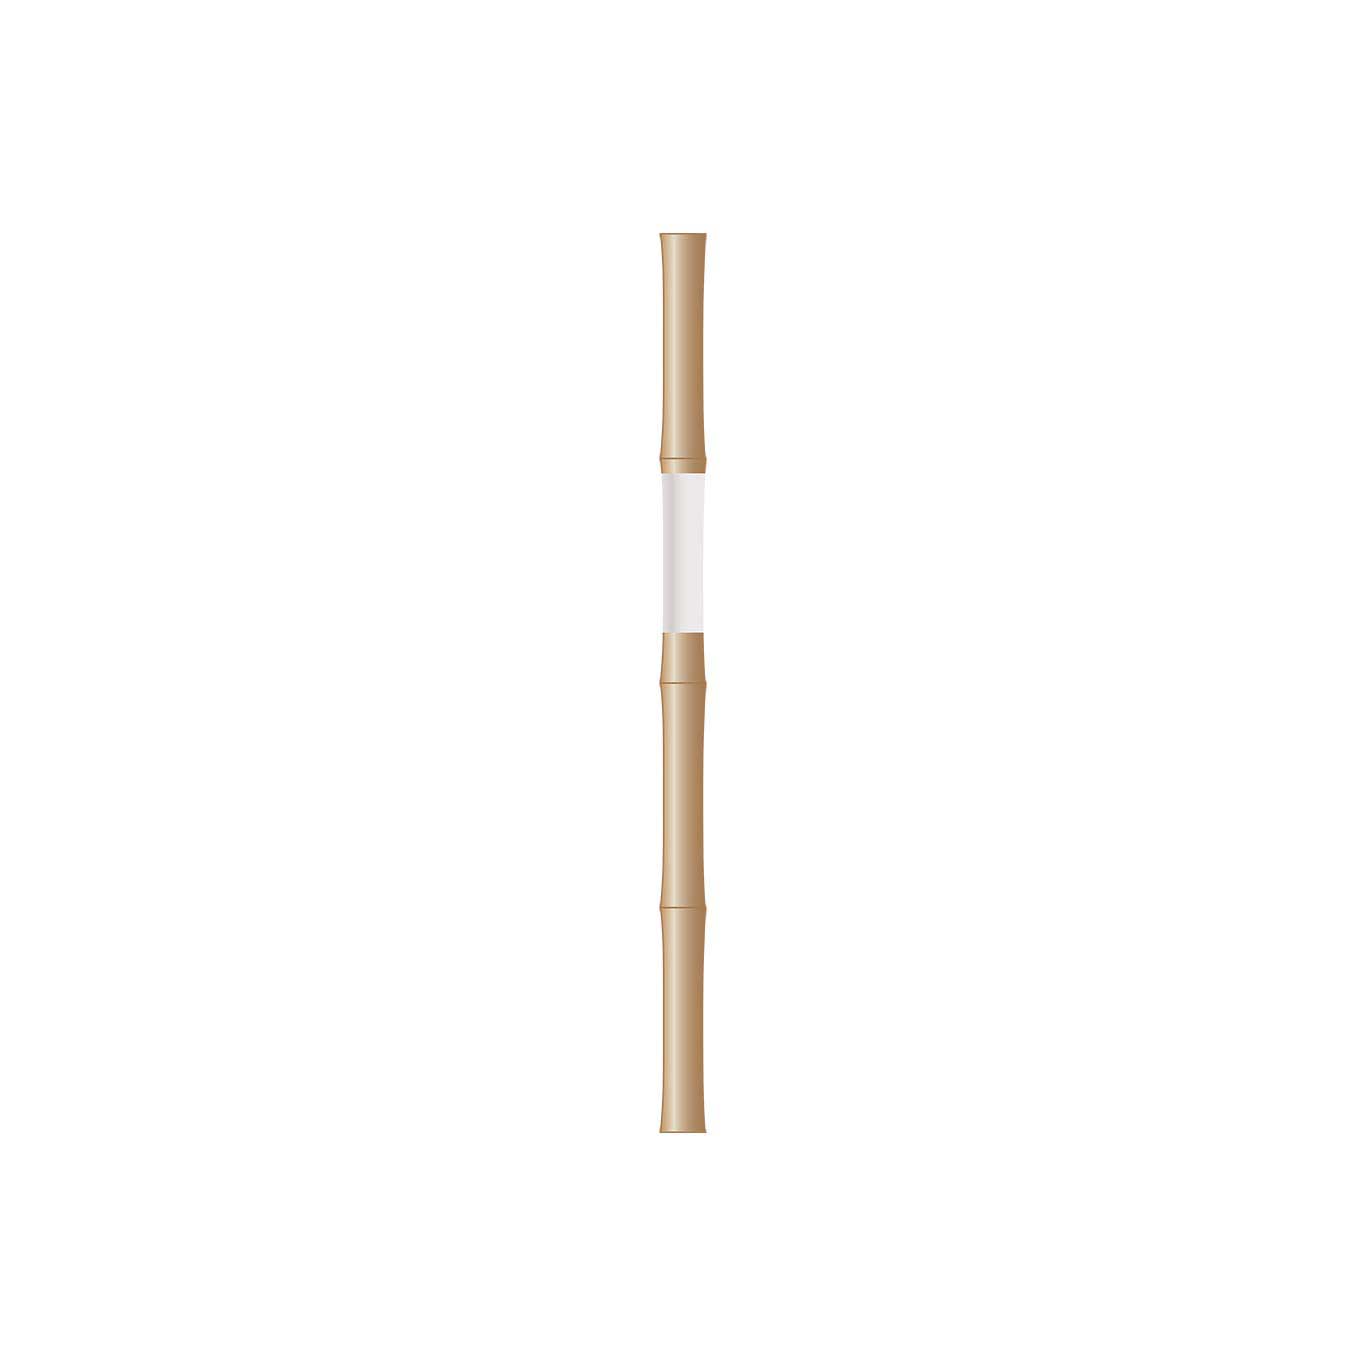 Snömarkeringskäpp Bambu utan reflex (100-pack) L-1800 mm diam 16-18 mm